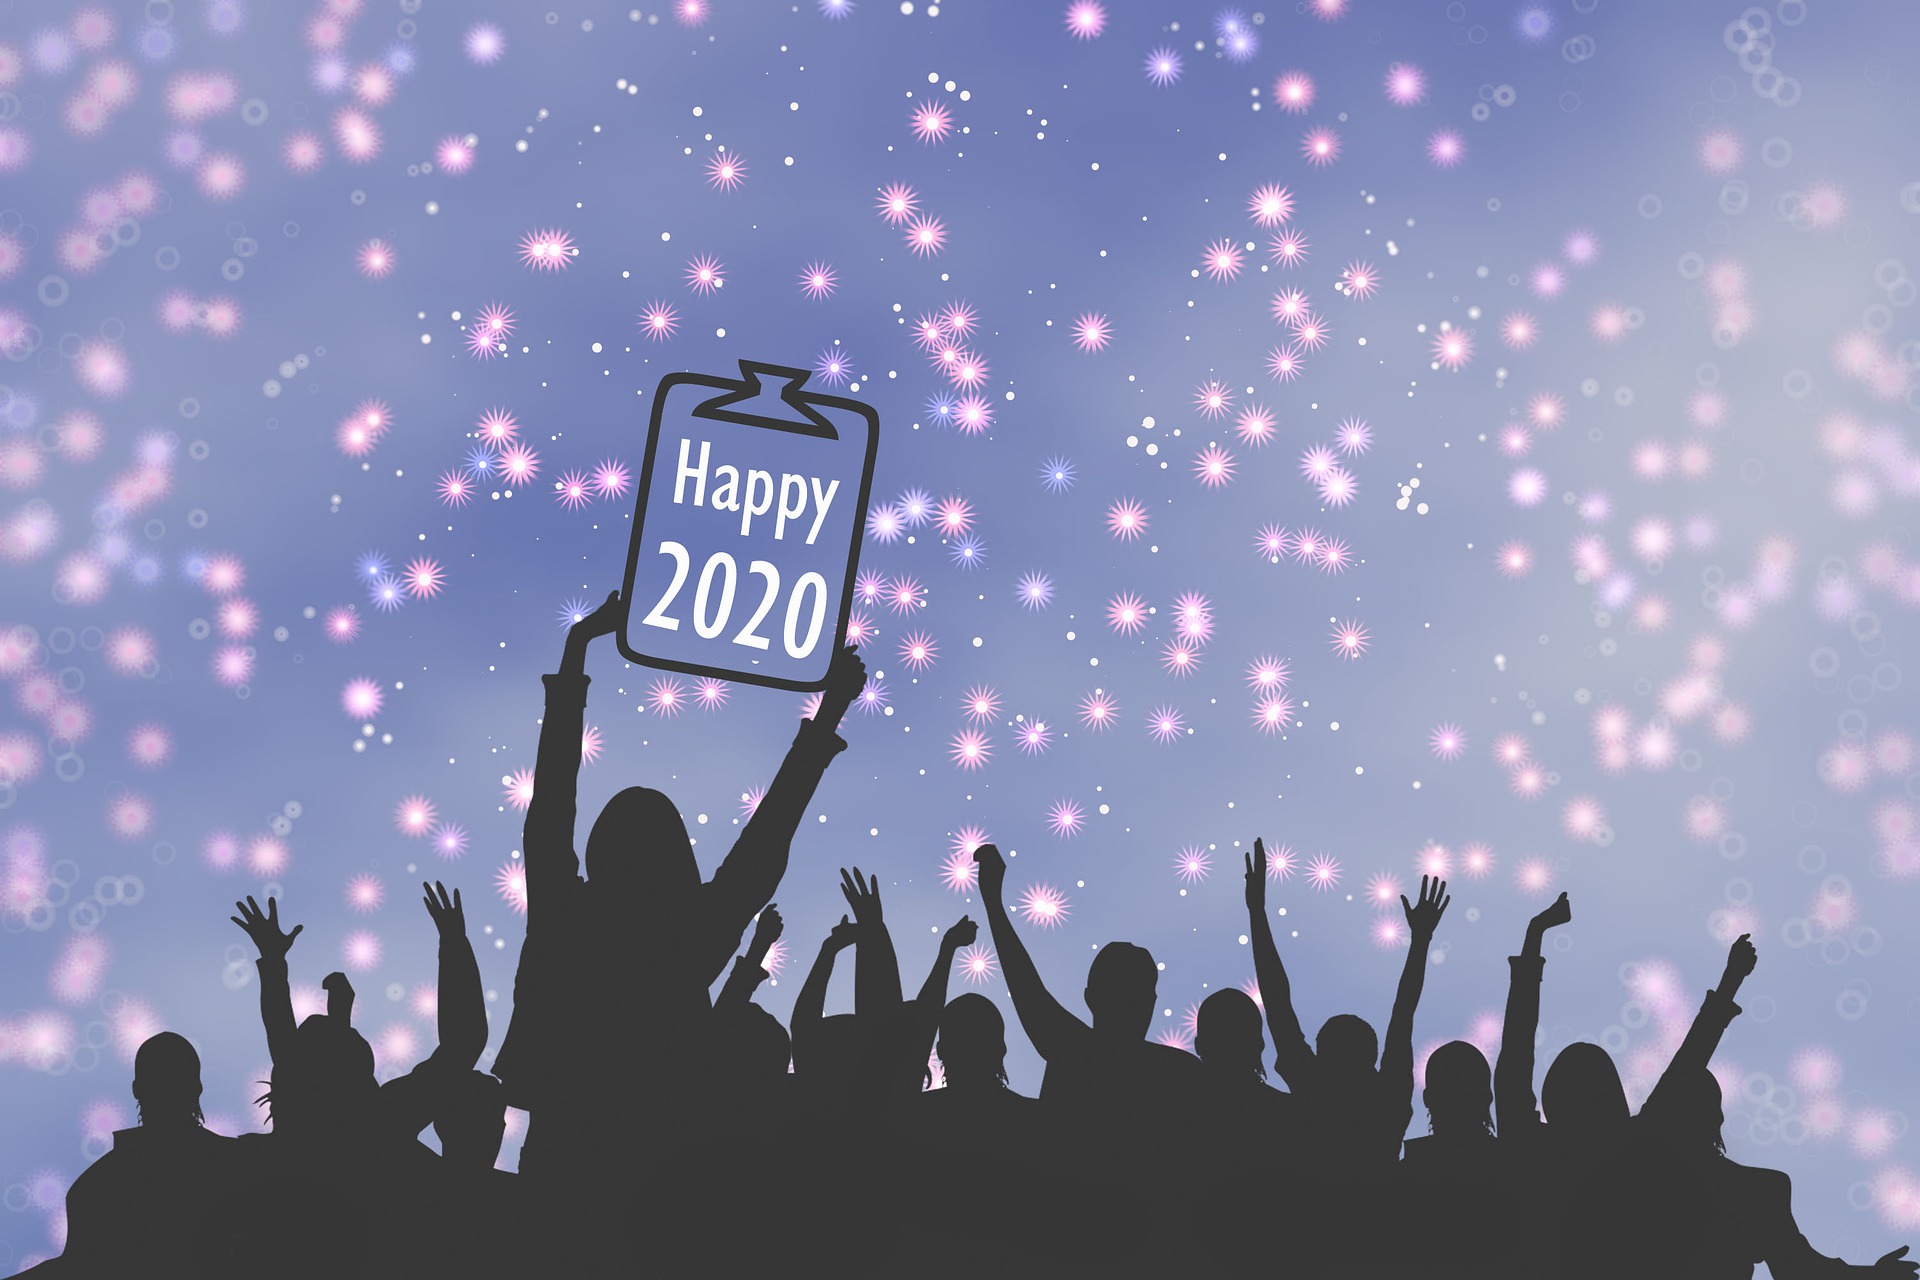 【2020新年快樂】